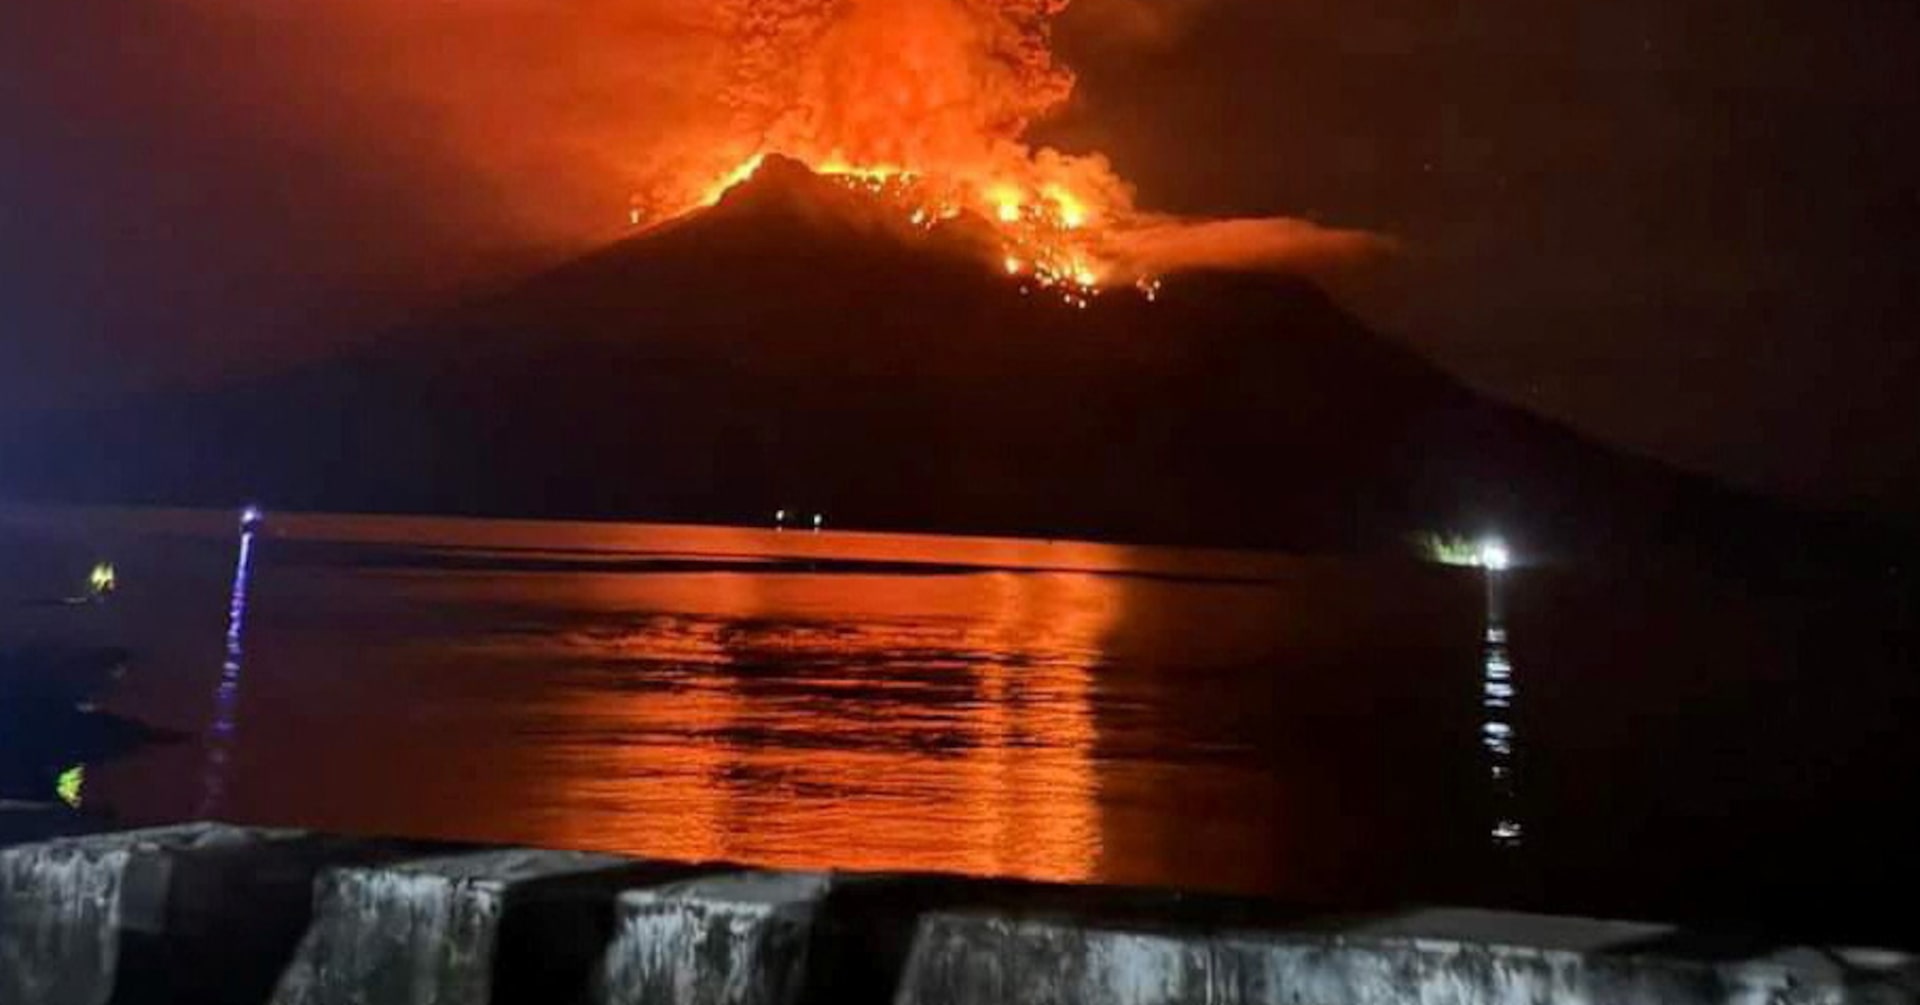 インドネシア、大規模噴火で多数の住民避難 空港閉鎖も